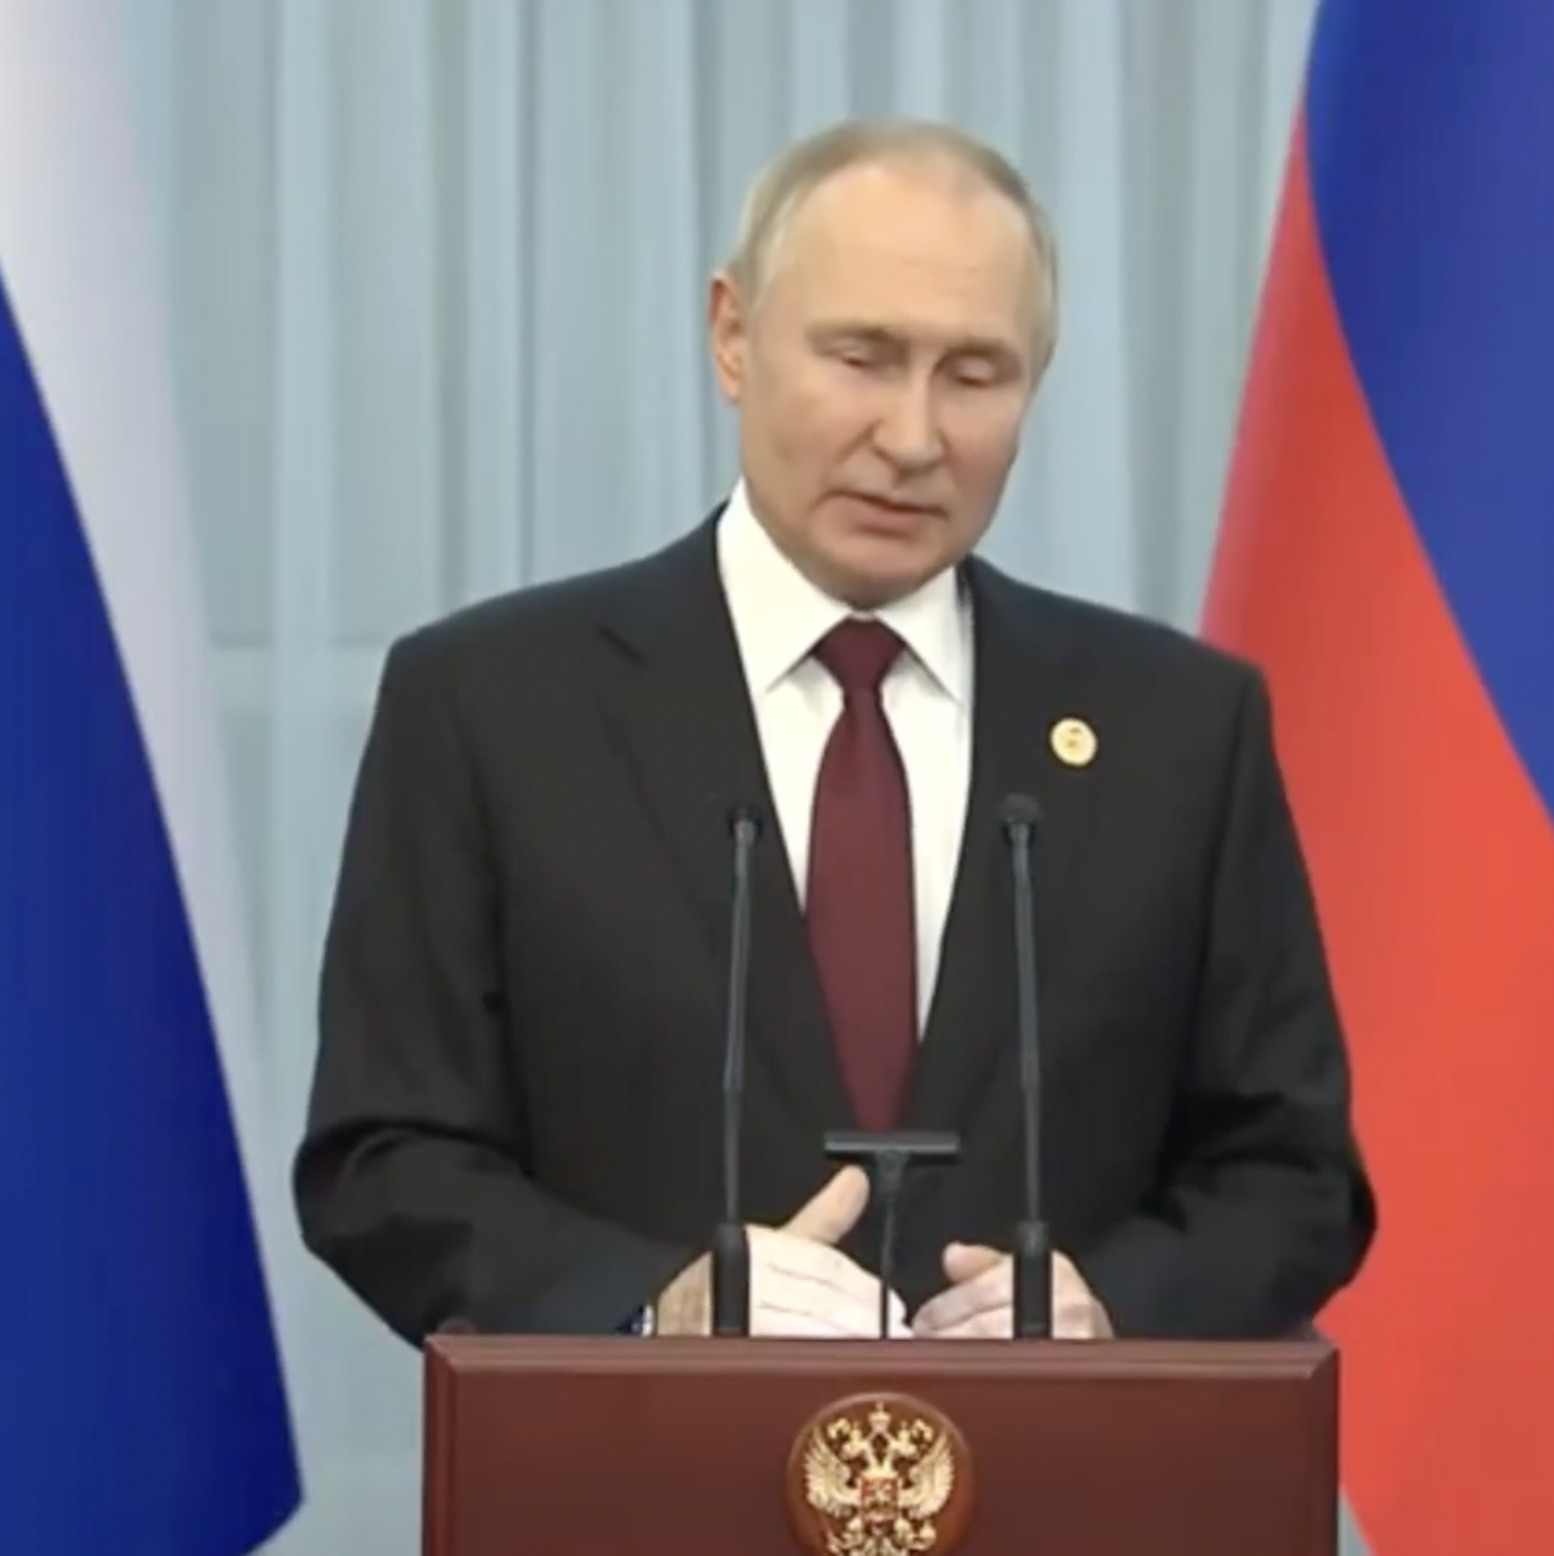 "Усе стабільно, жодних проблем": Путін пояснив свої слова про довготривалий характер "спецоперації" і заговорив про переговори. Відео